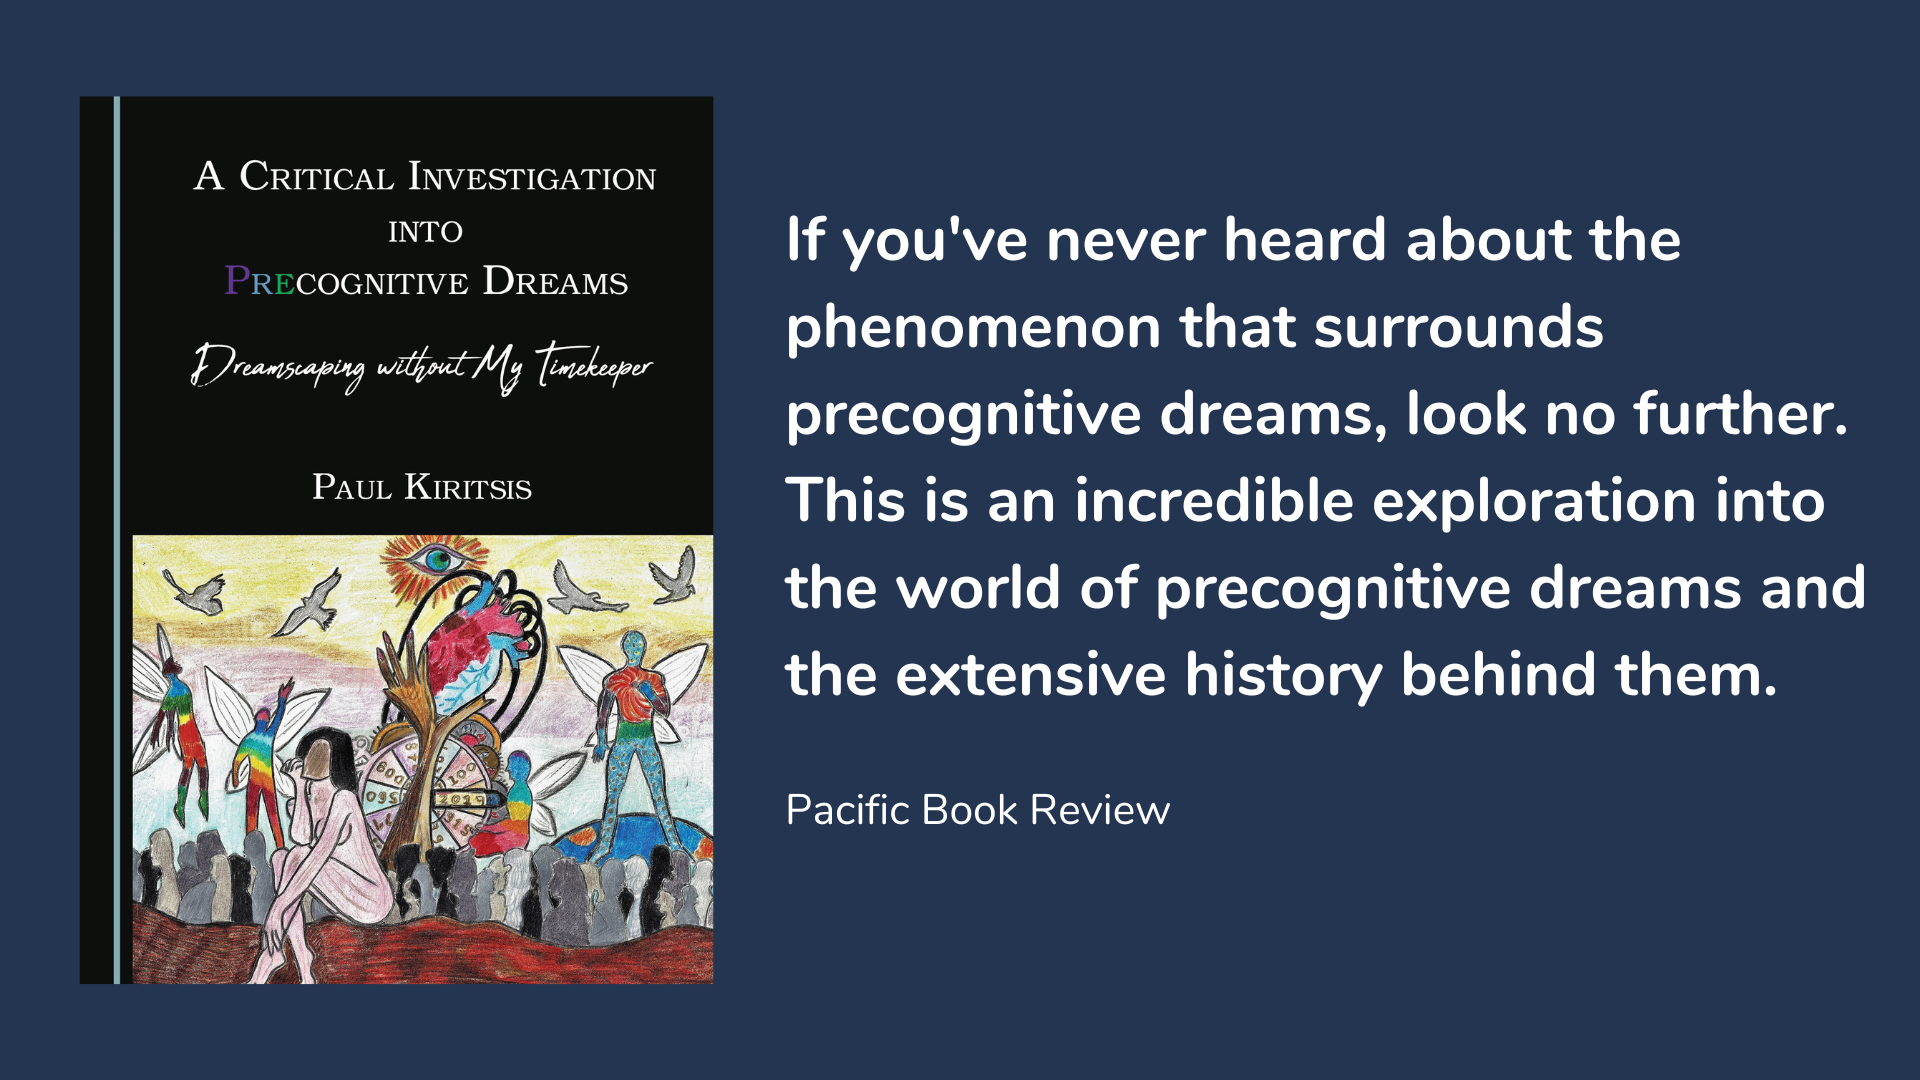 A Critical Investigation into Precognitive Dreams, book cover and description.